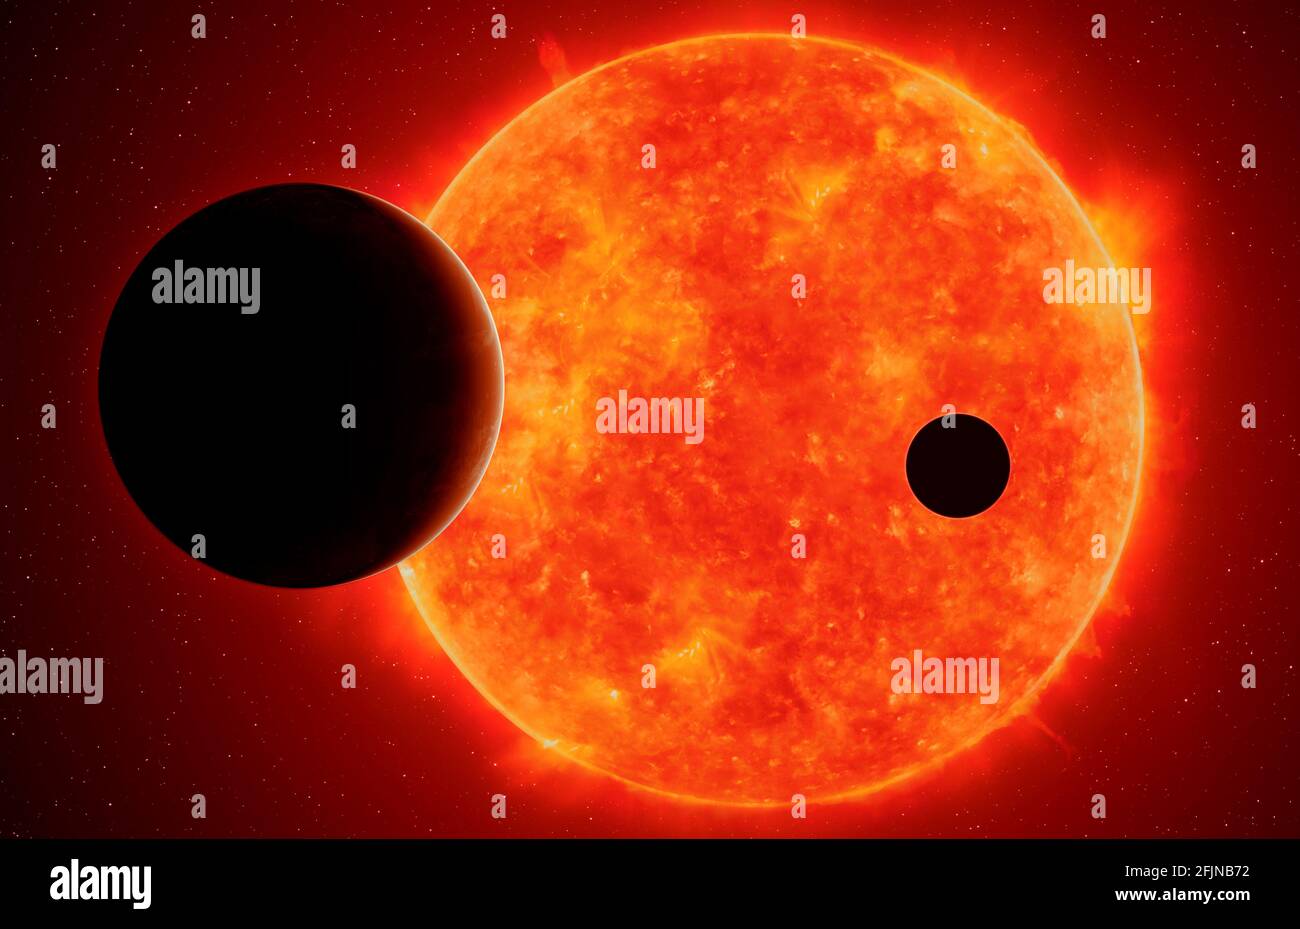 Zwei Exoplaneten gegen den Roten Zwerg, Elemente dieses Bildes, die von der NASA eingerichtet wurden Stockfoto